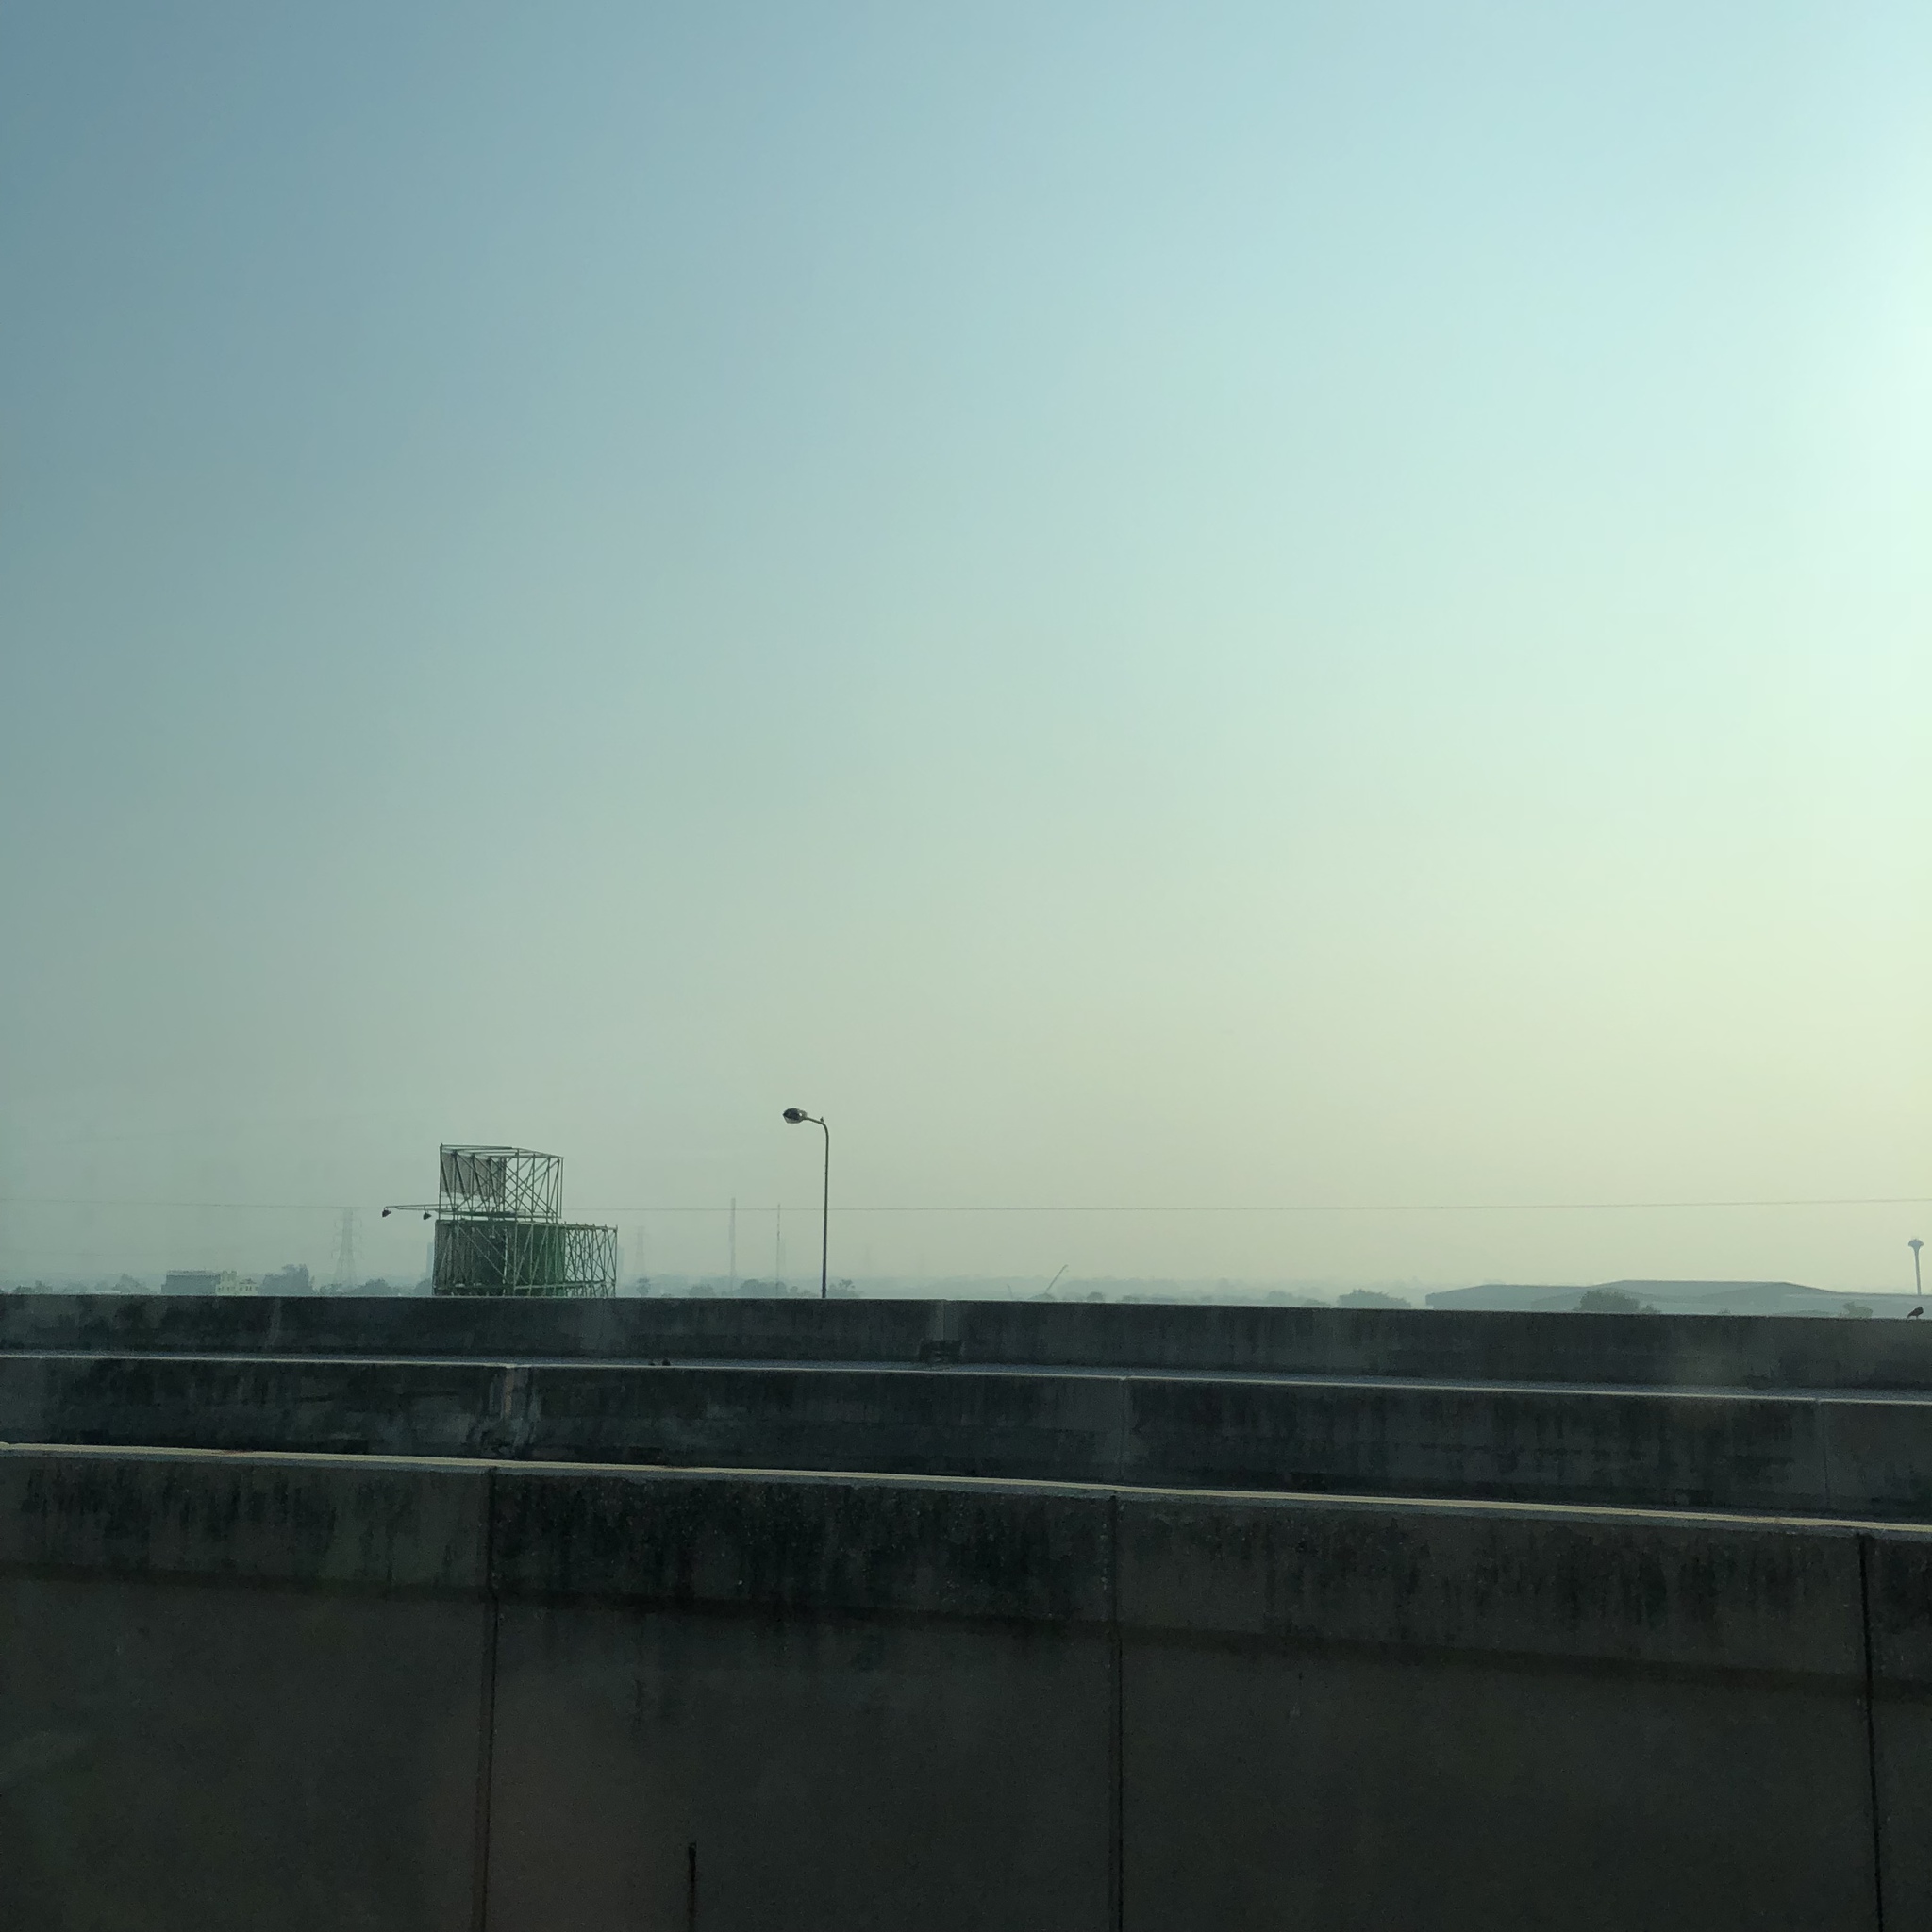 バンコクの大気汚染が酷くなってる気がする。天気は良くても青空が見えない。